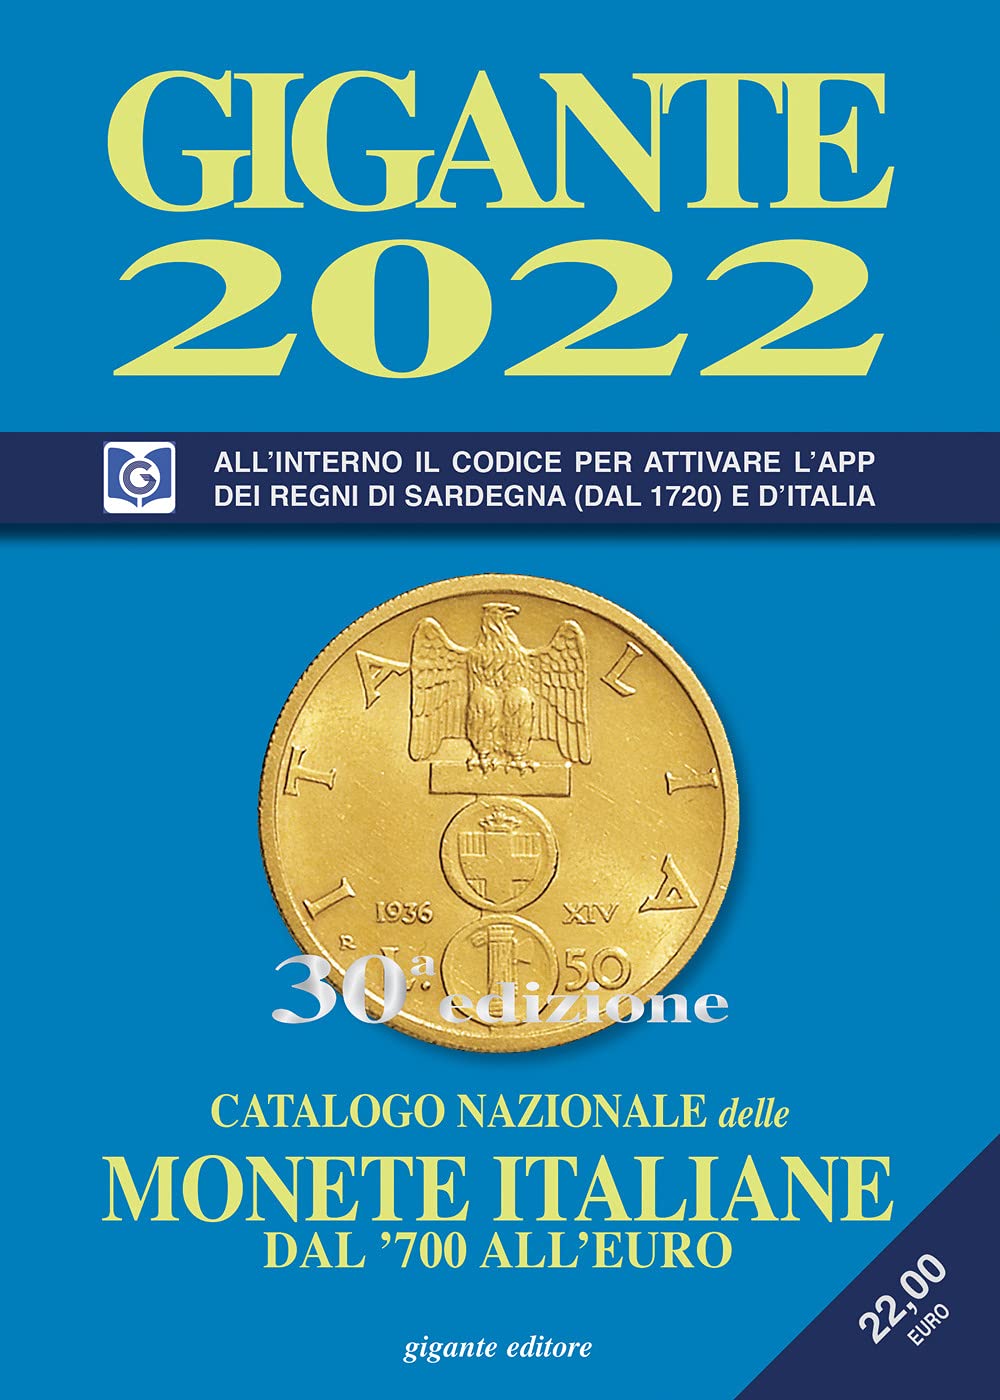 Libri Fabio Gigante - Gigante 2022. Catalogo Nazionale Delle Monete Italiane Dal '700 All'euro NUOVO SIGILLATO, EDIZIONE DEL 07/09/2021 SUBITO DISPONIBILE